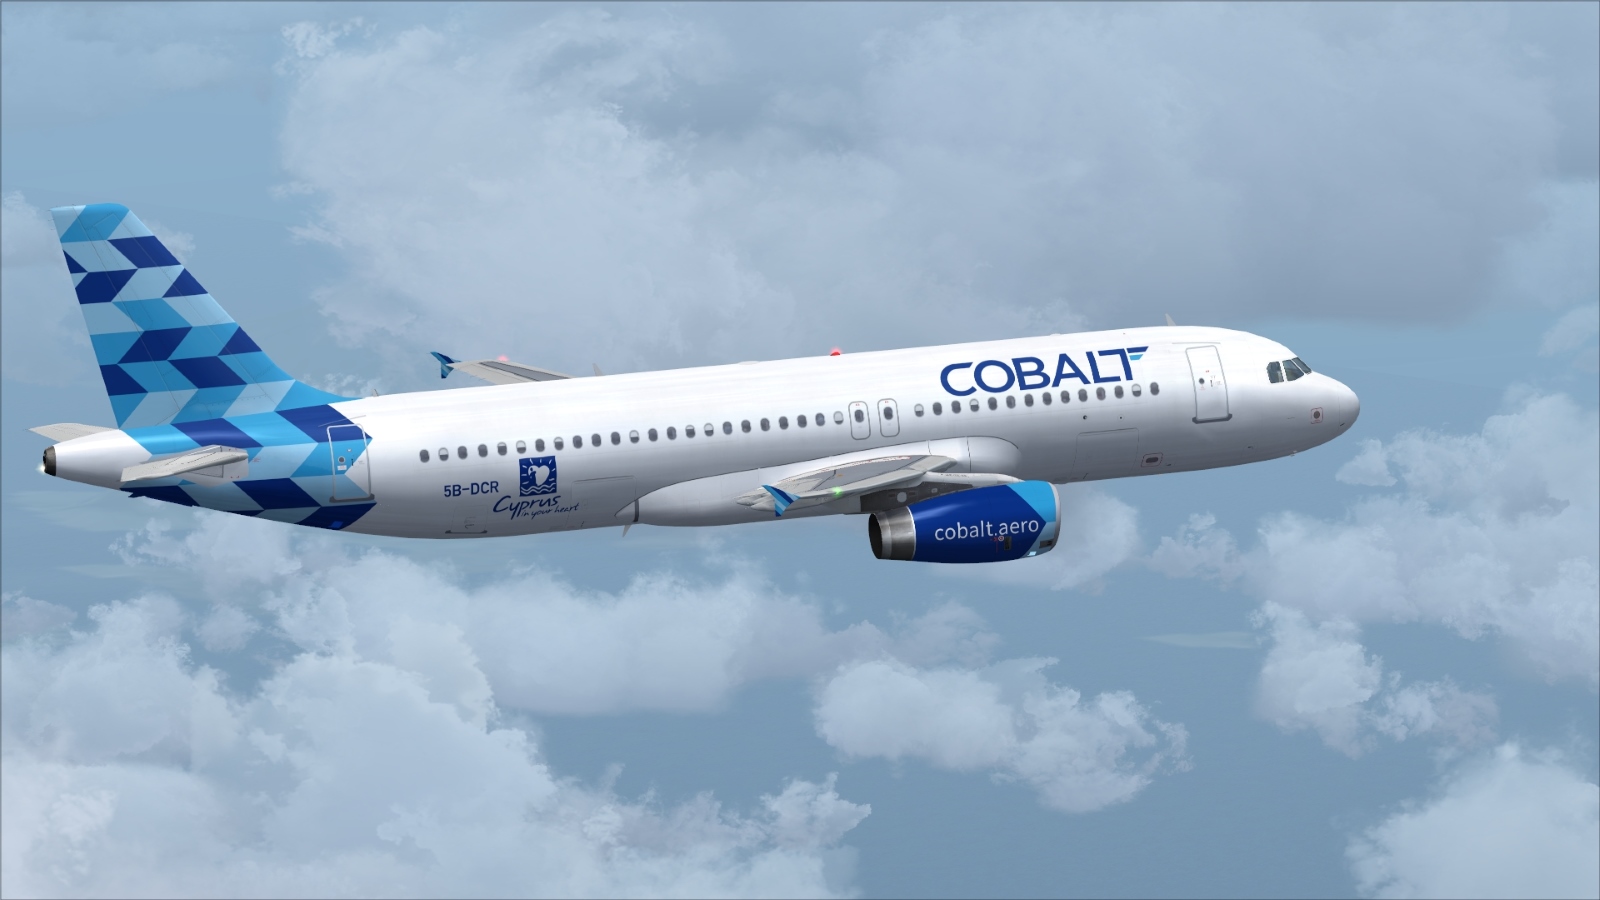 ΠΡΟΛΑΒΕΤΕ - Με εισιτήρια από €24,99 η Cobalt Air!